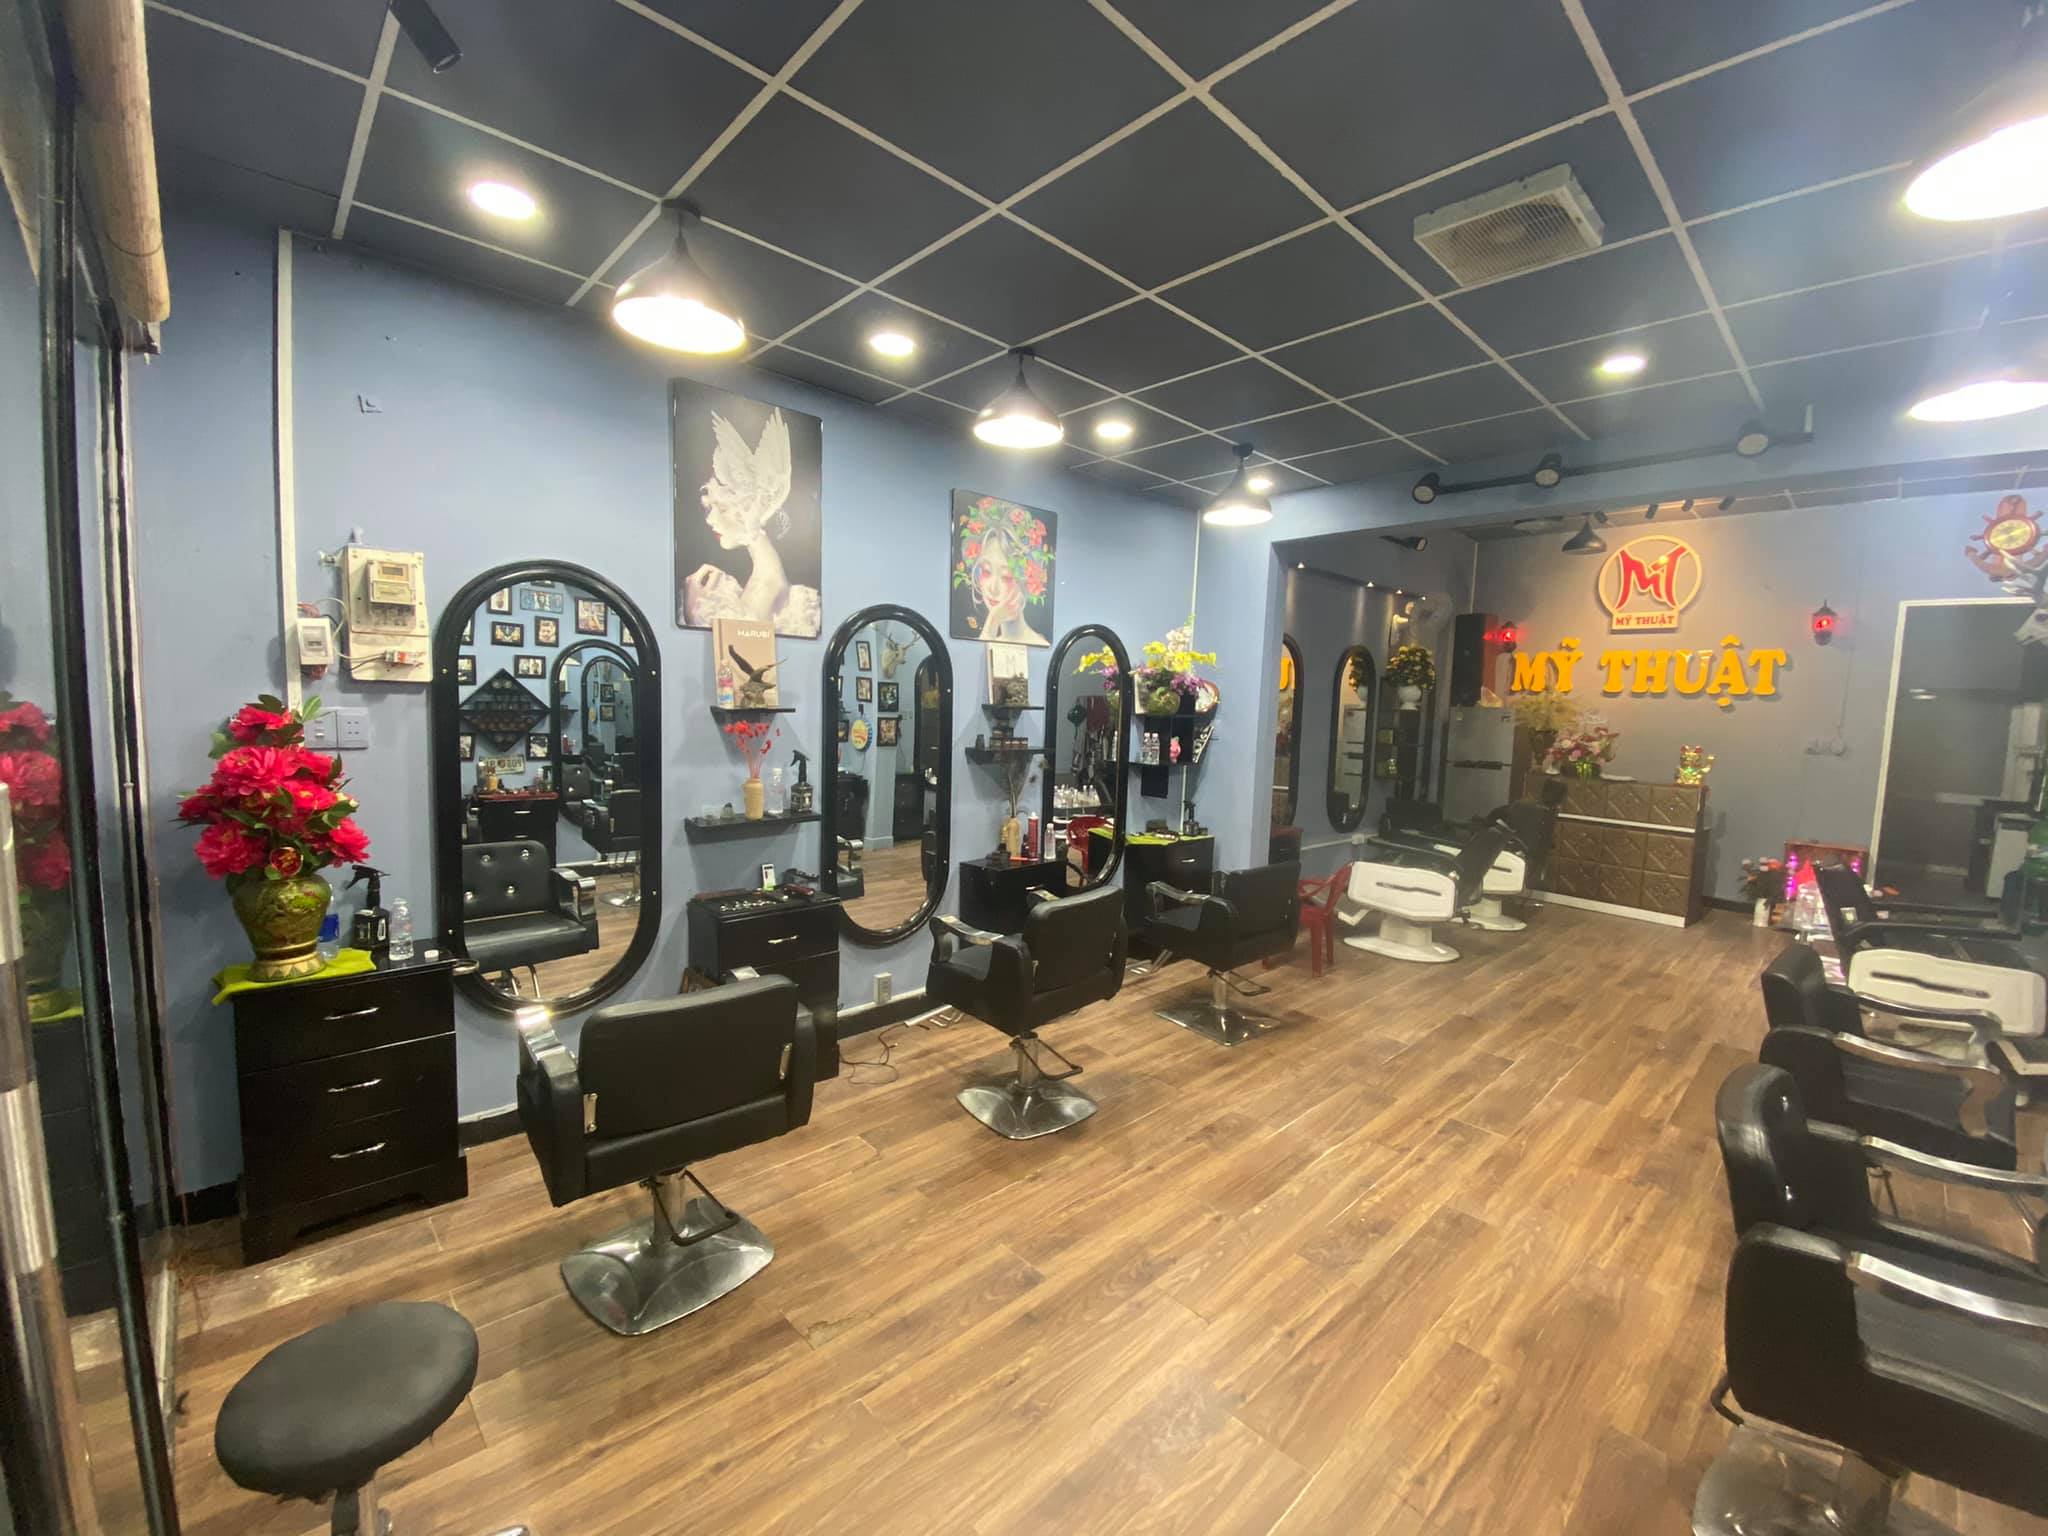 Tiệm cắt tóc nam Phú Quốc với không gian thiết kế cực kỳ phong cách và sang trọng sẽ là điểm đến lý tưởng cho những quý ông muốn tìm kiếm một dịch vụ cắt tóc đẳng cấp và chất lượng. Hãy đến và trải nghiệm để cảm nhận sự khác biệt giữa những tiệm cắt tóc khác nhé!